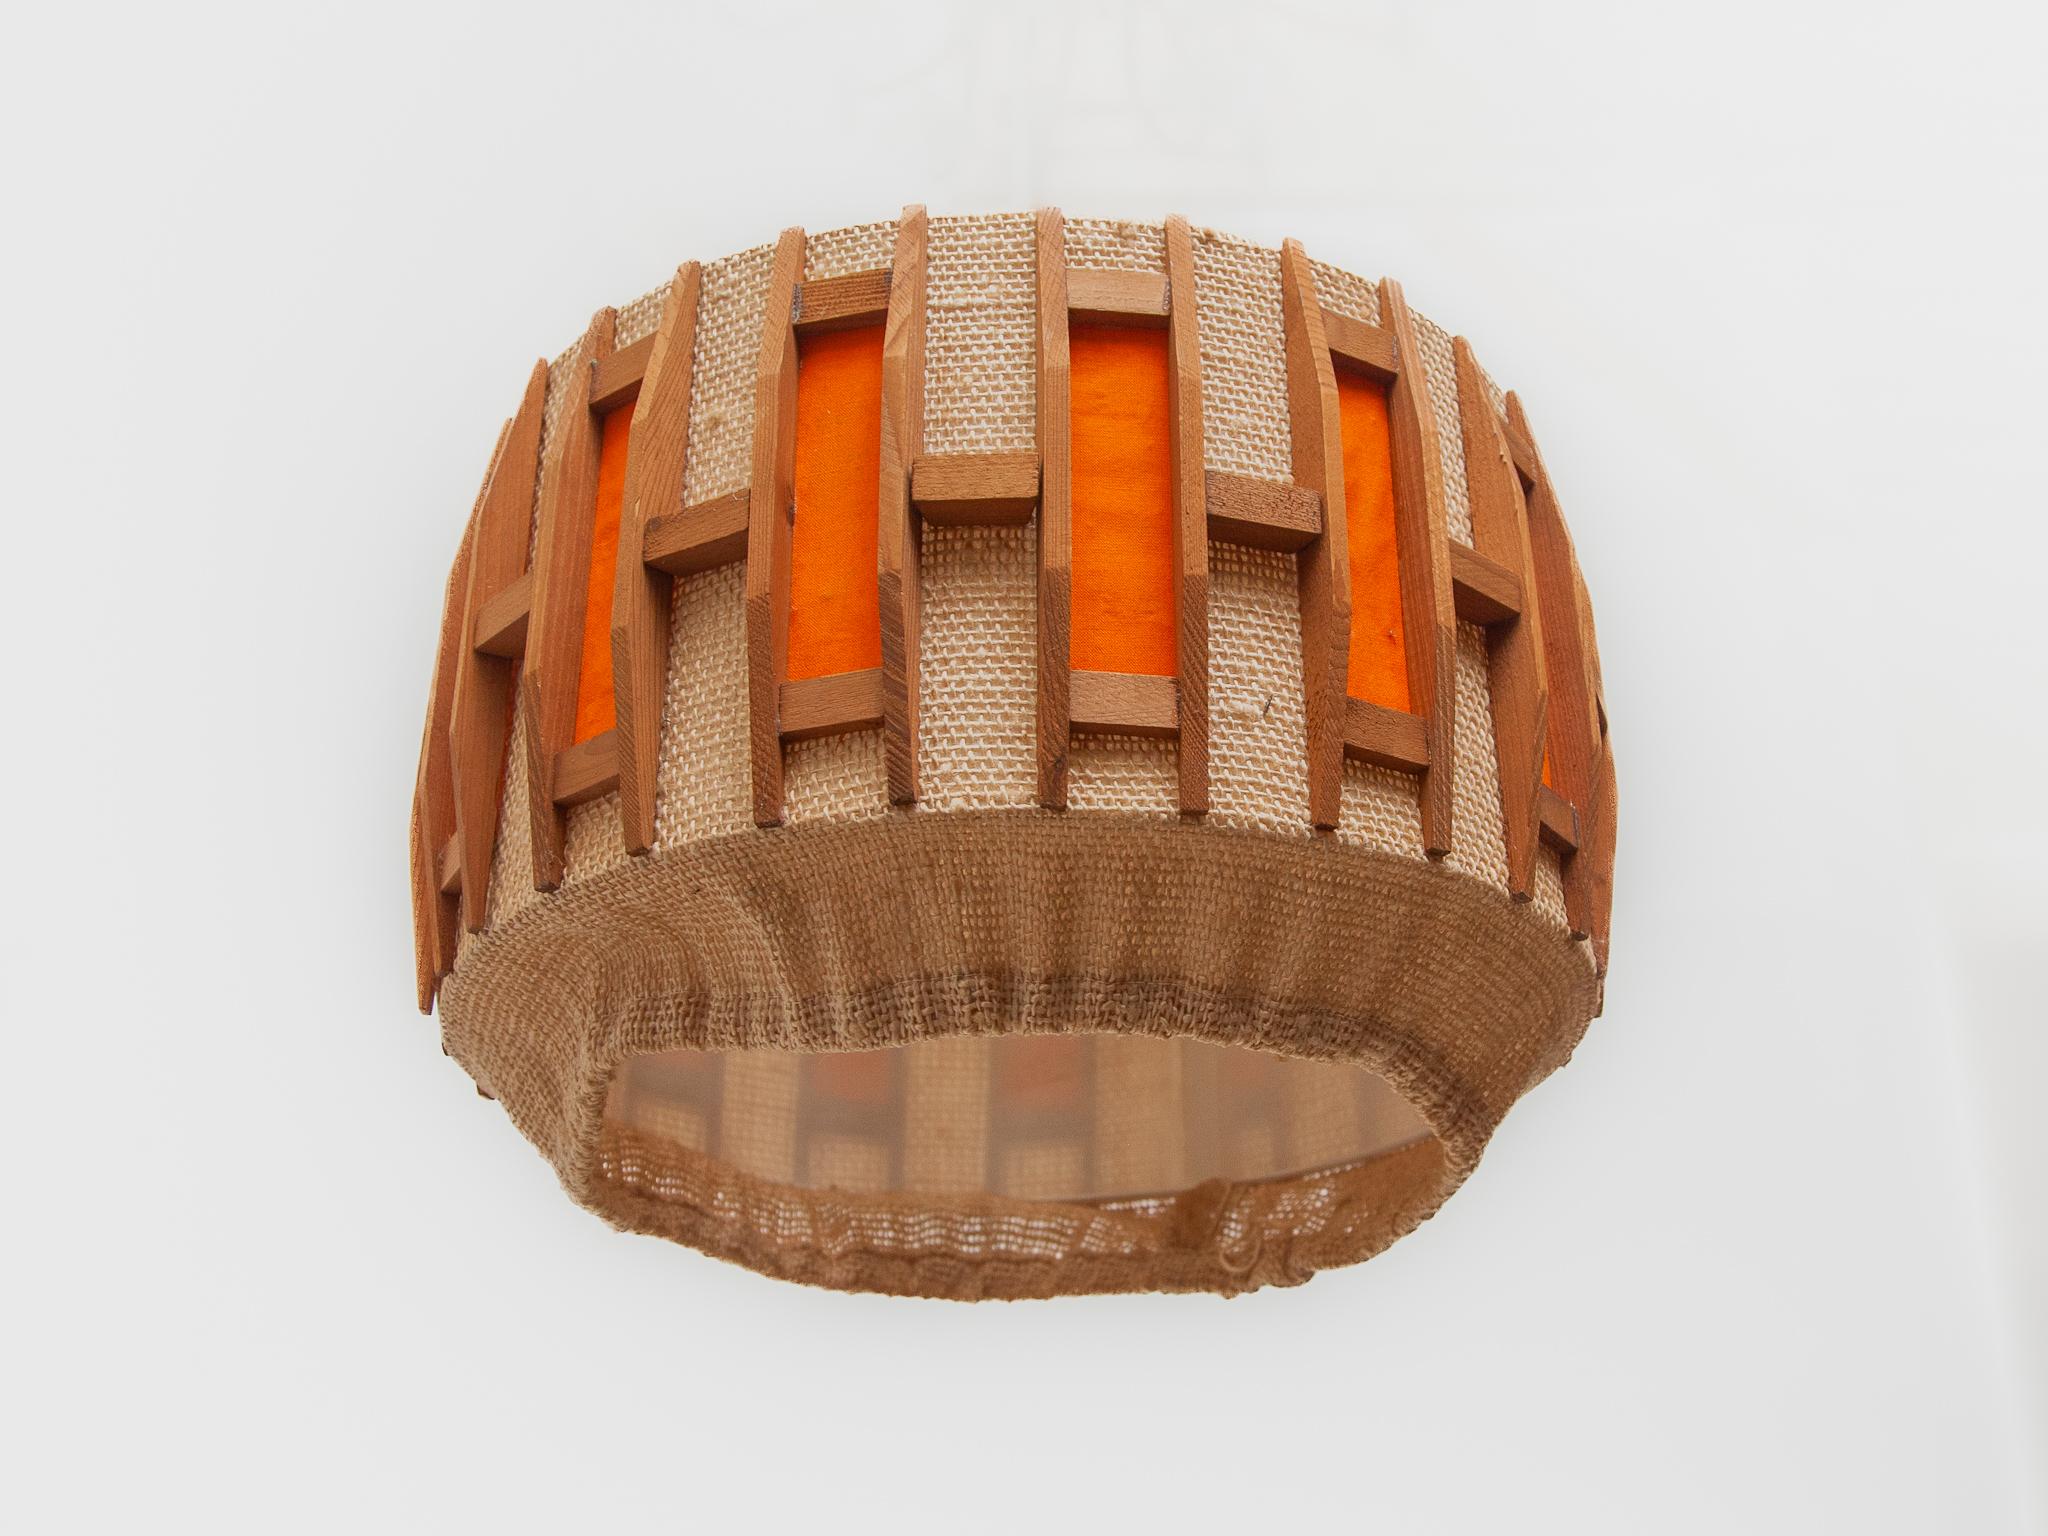 Orange Midcentury Belgium Design in Teak and Jute Pendant Lamp, 1960s For Sale 3